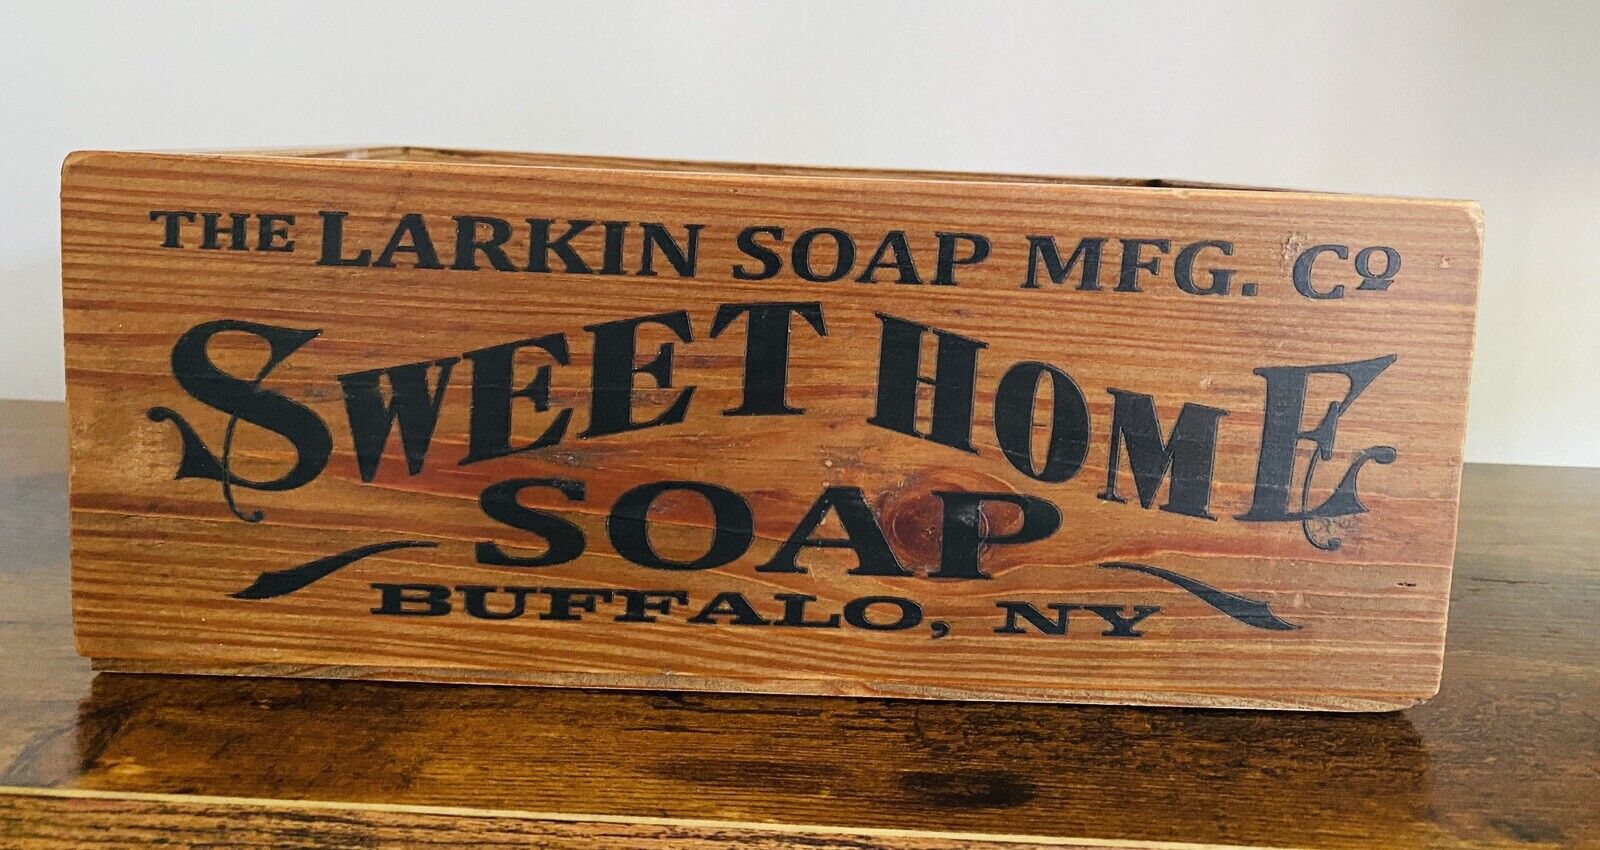 The Larkin Soap Mfg Co Sweet Home Soap Buffalo NY Box Repro Rustic Farmhouse